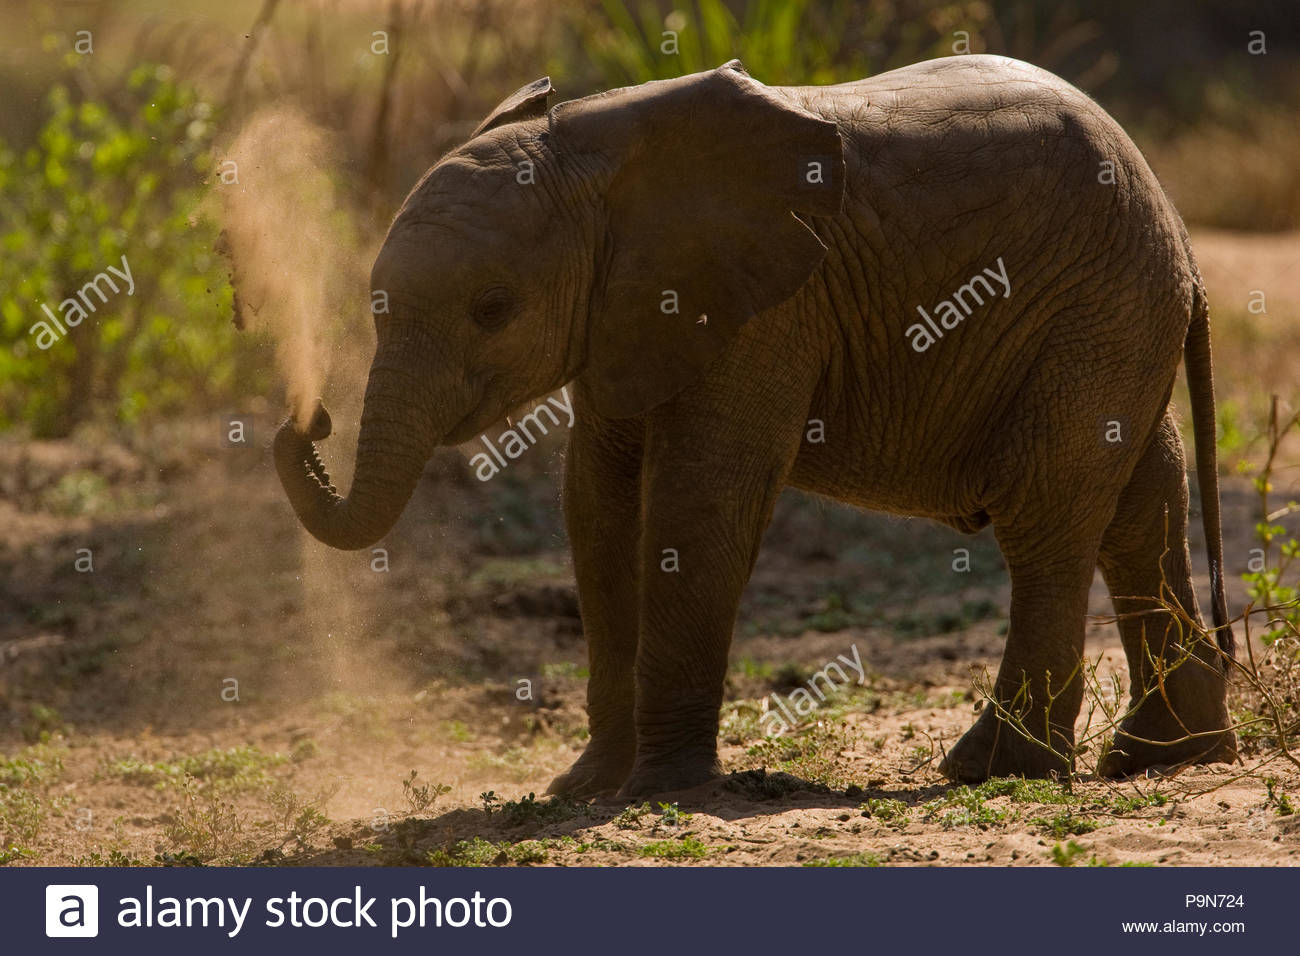 Ein Baby Afrikanischer Elefant, Loxodonta africana, Schmutz werfen. Stockfoto